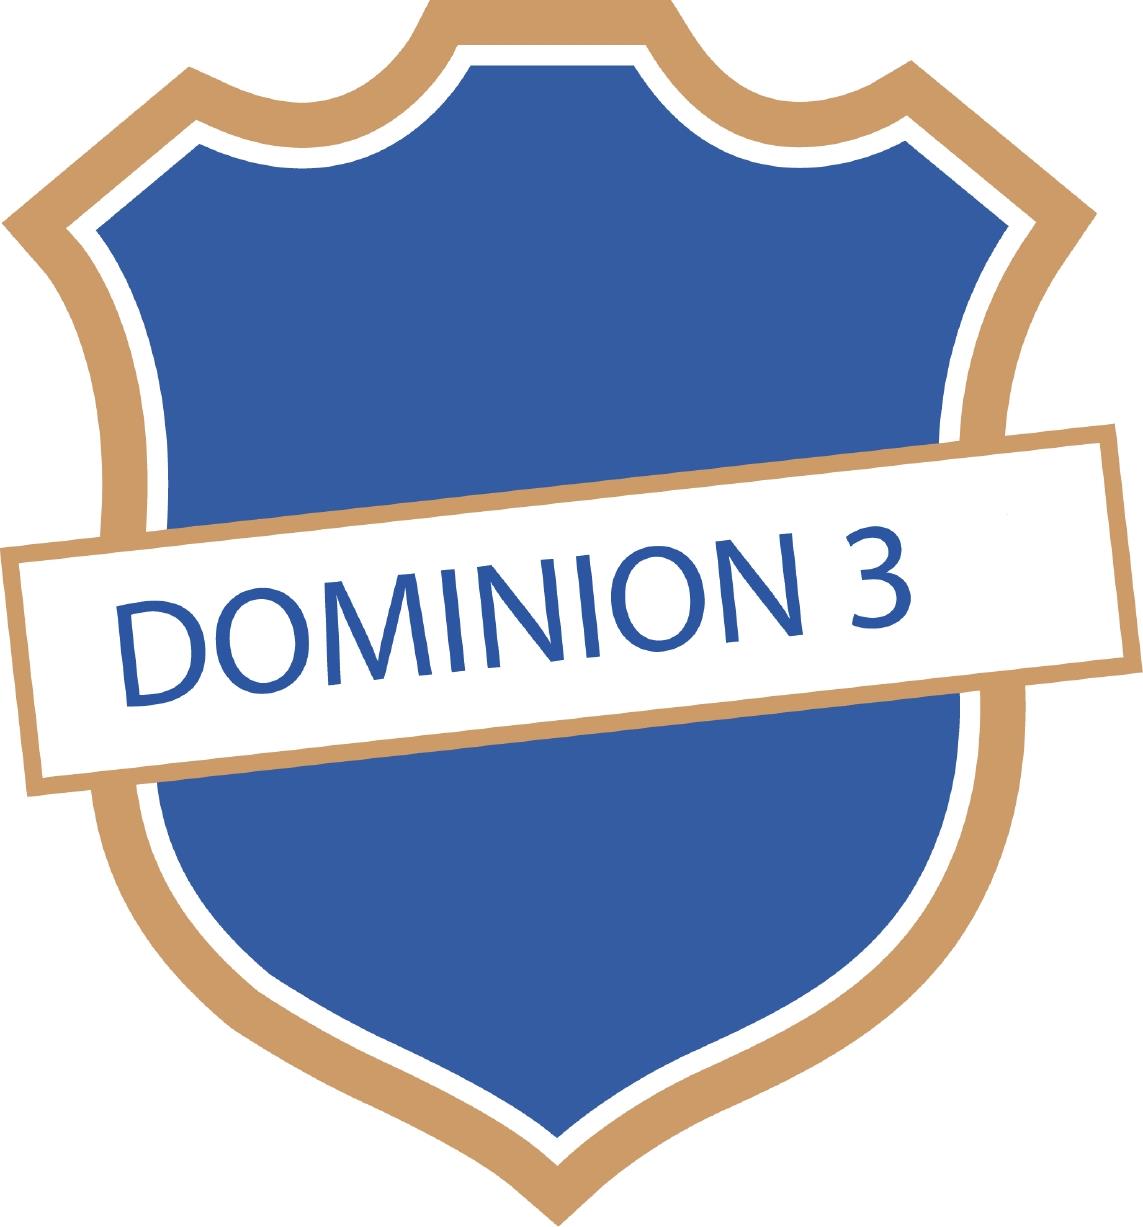  DOMINION 3